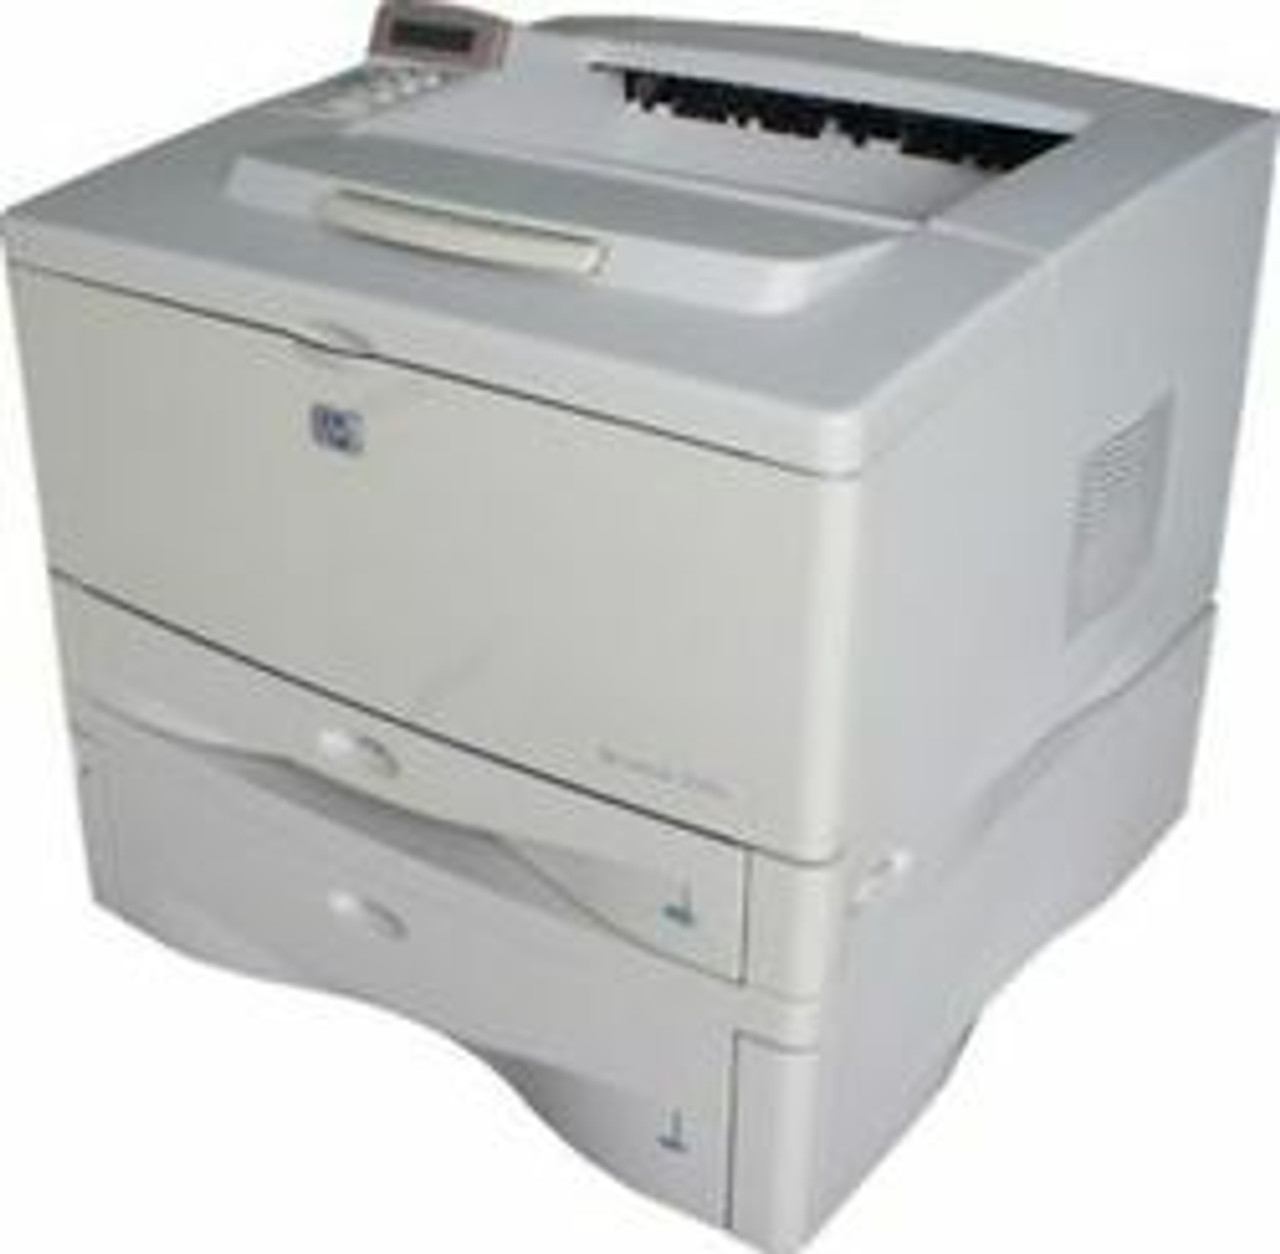 HP LaserJet 5100tn